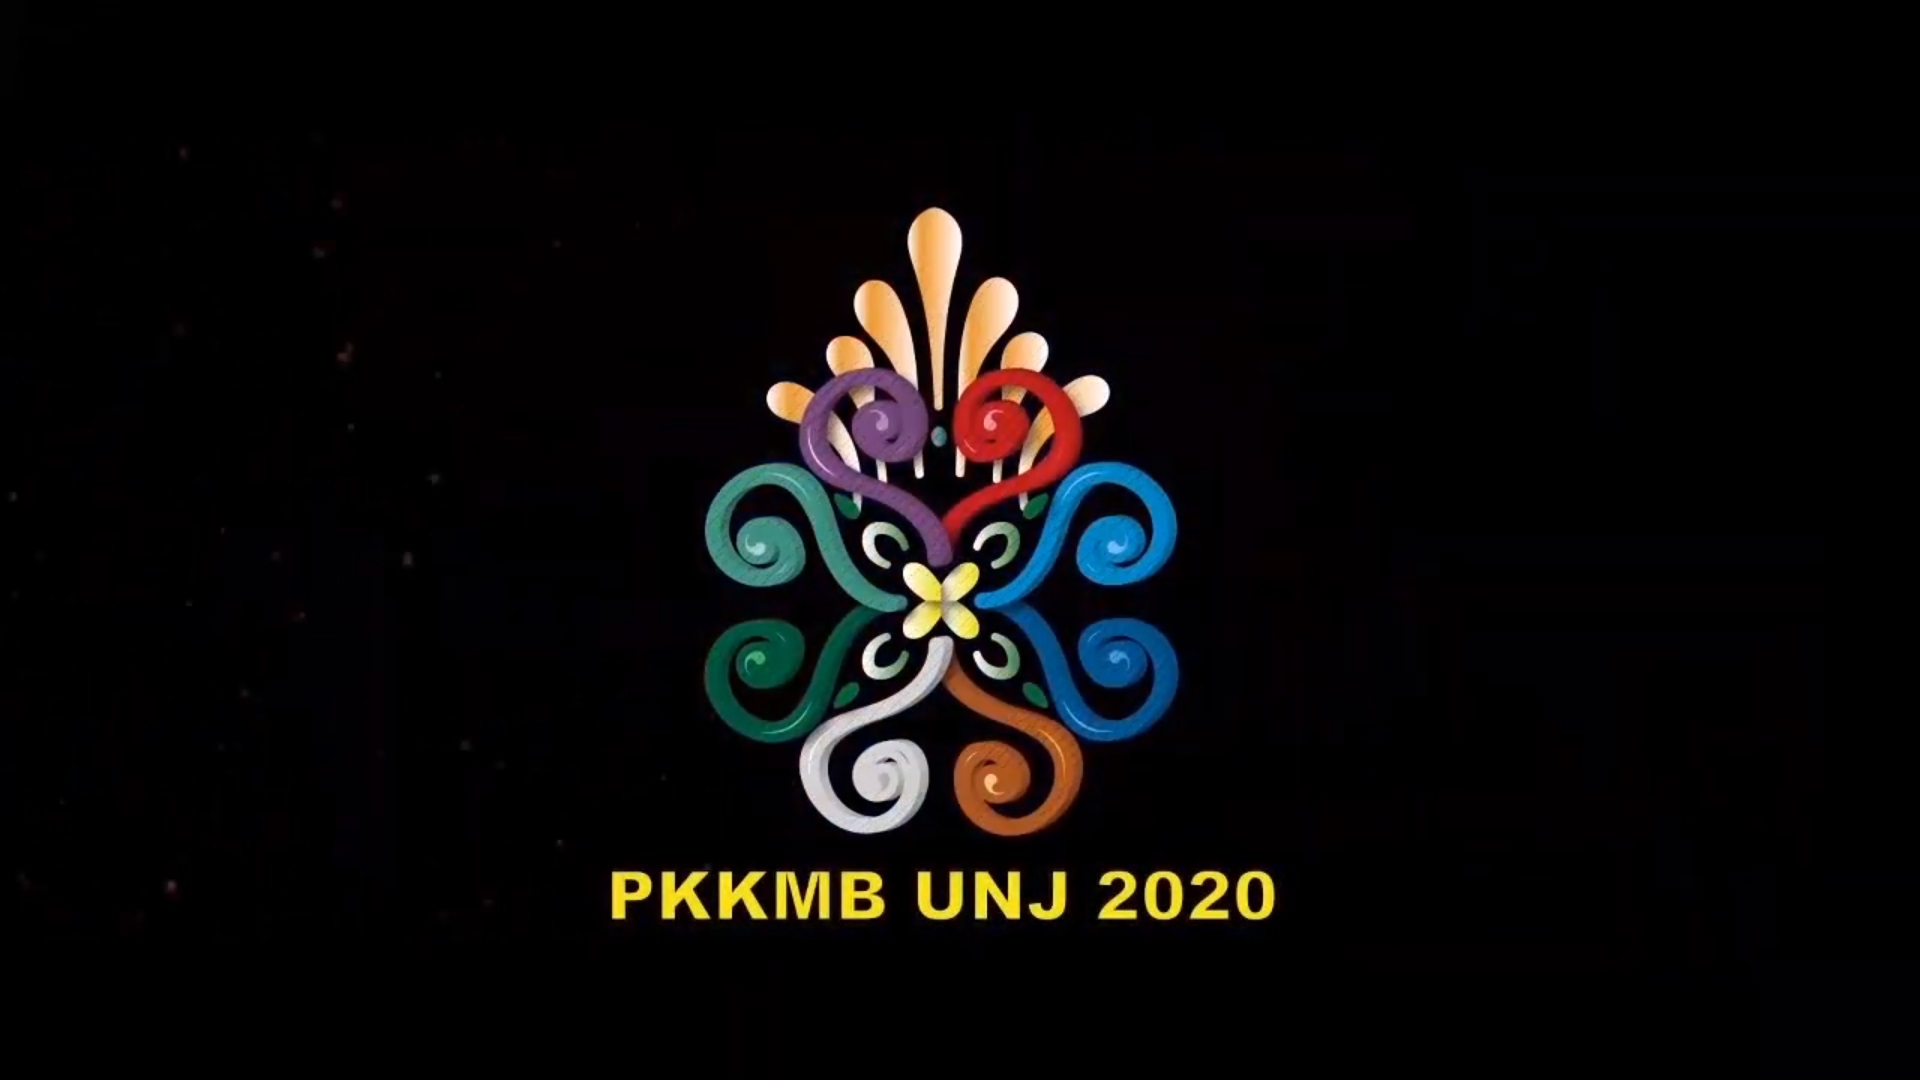 (Bahasa) Tautan untuk Penutupan PKKMB UNJ 2020